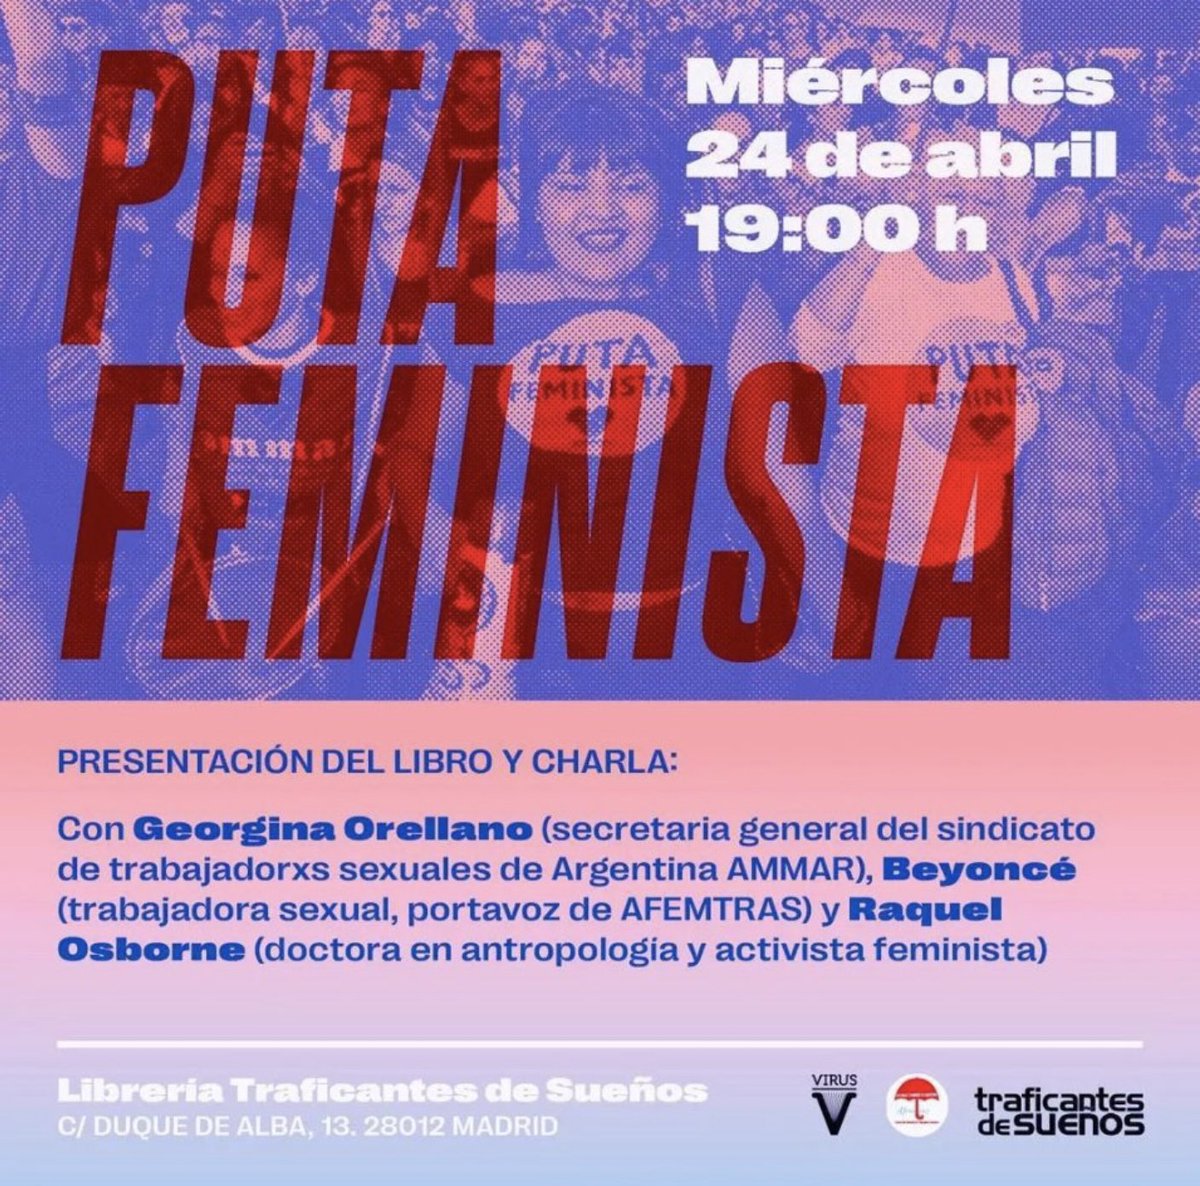 🚨 HOY EN MADRID Miércoles 24 a las 19 horas @GeorOrellano presenta su libro “Puta feminista” La cita es en @traficantes2010 calle Duque de Alba, 13 Madrid Allí nos veremos #putafeminista #LaPeco 🐞